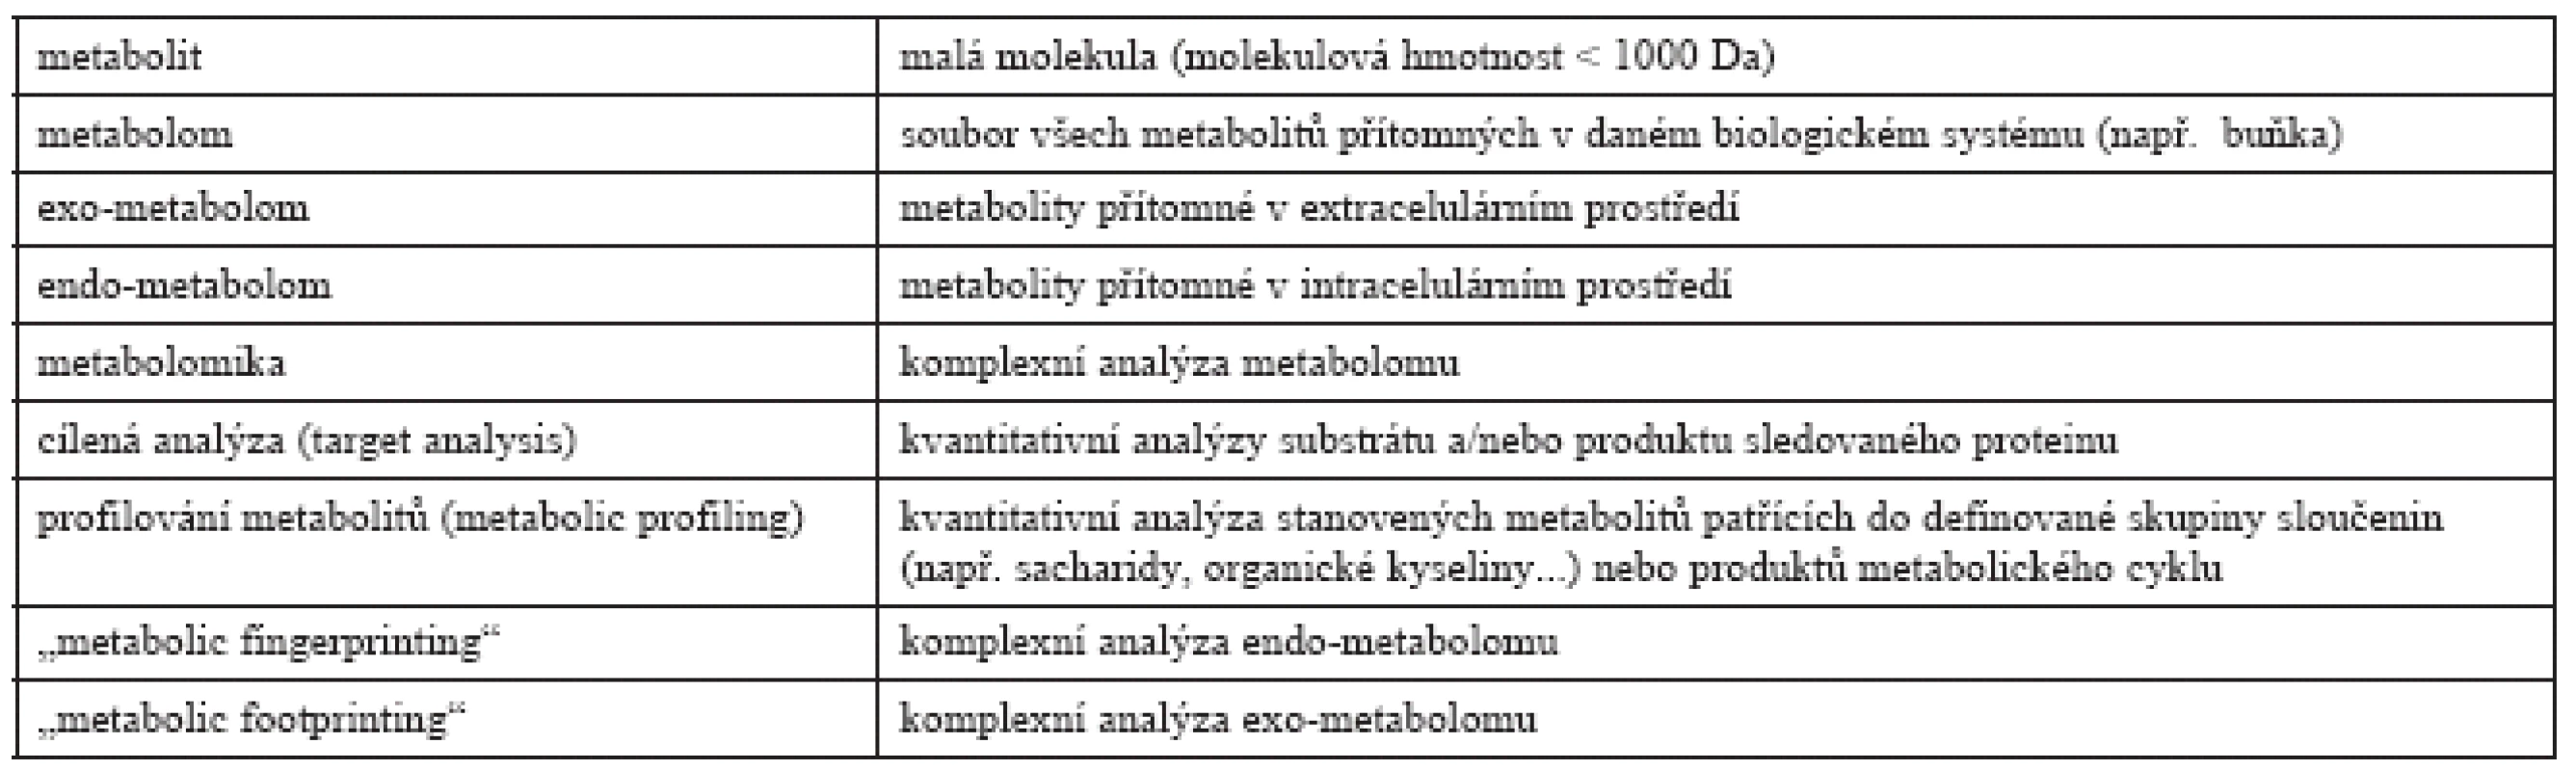 Přehled pojmů a jejich definic používaných ve studiích metabolomu